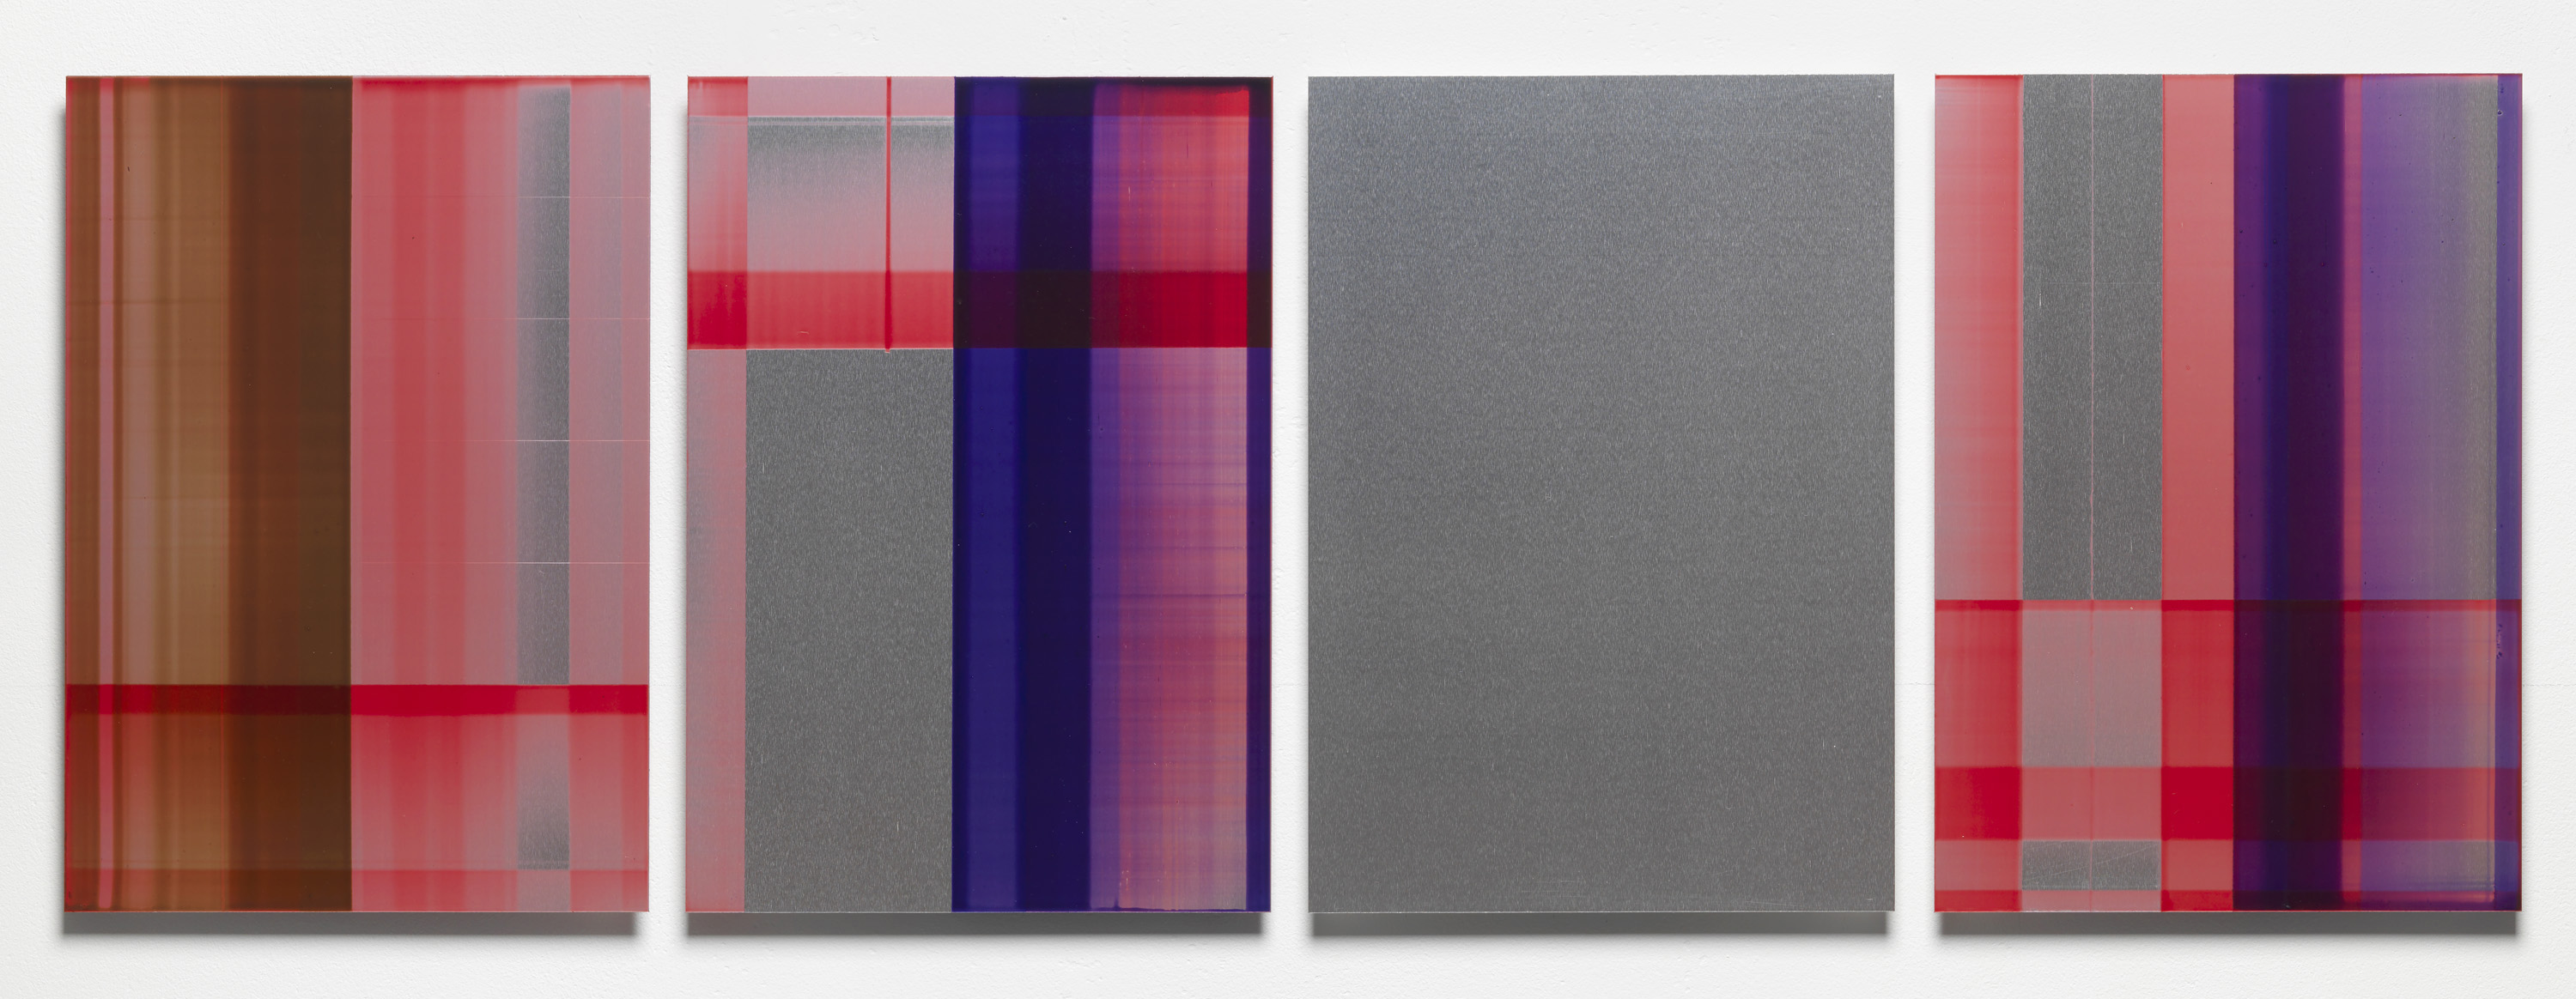 Eric Butcher - P/R. 689, oil and resin on aluminium, 30 x 21 cm each, 2015